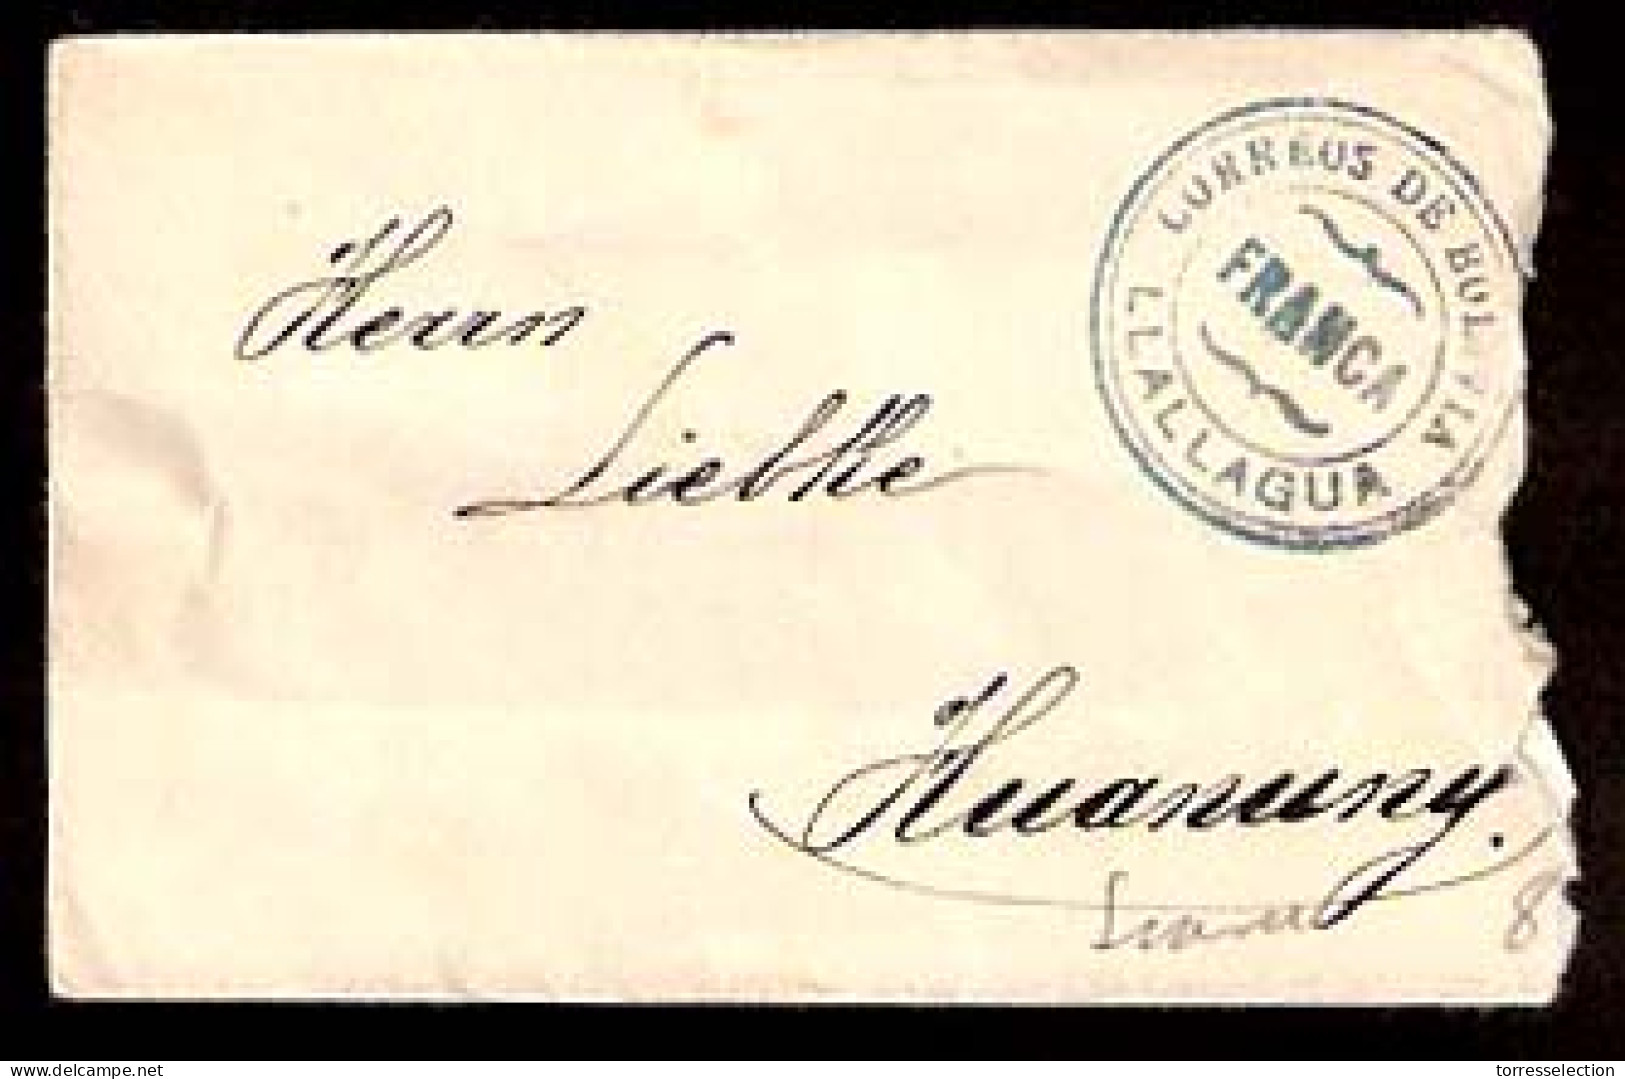 BOLIVIA. C.1920's. Llallagua - Huanuny. Env / Unfkd. "Correos / Franca" Blue Pmk Lack Of Stamps. Interesting. - Bolivia